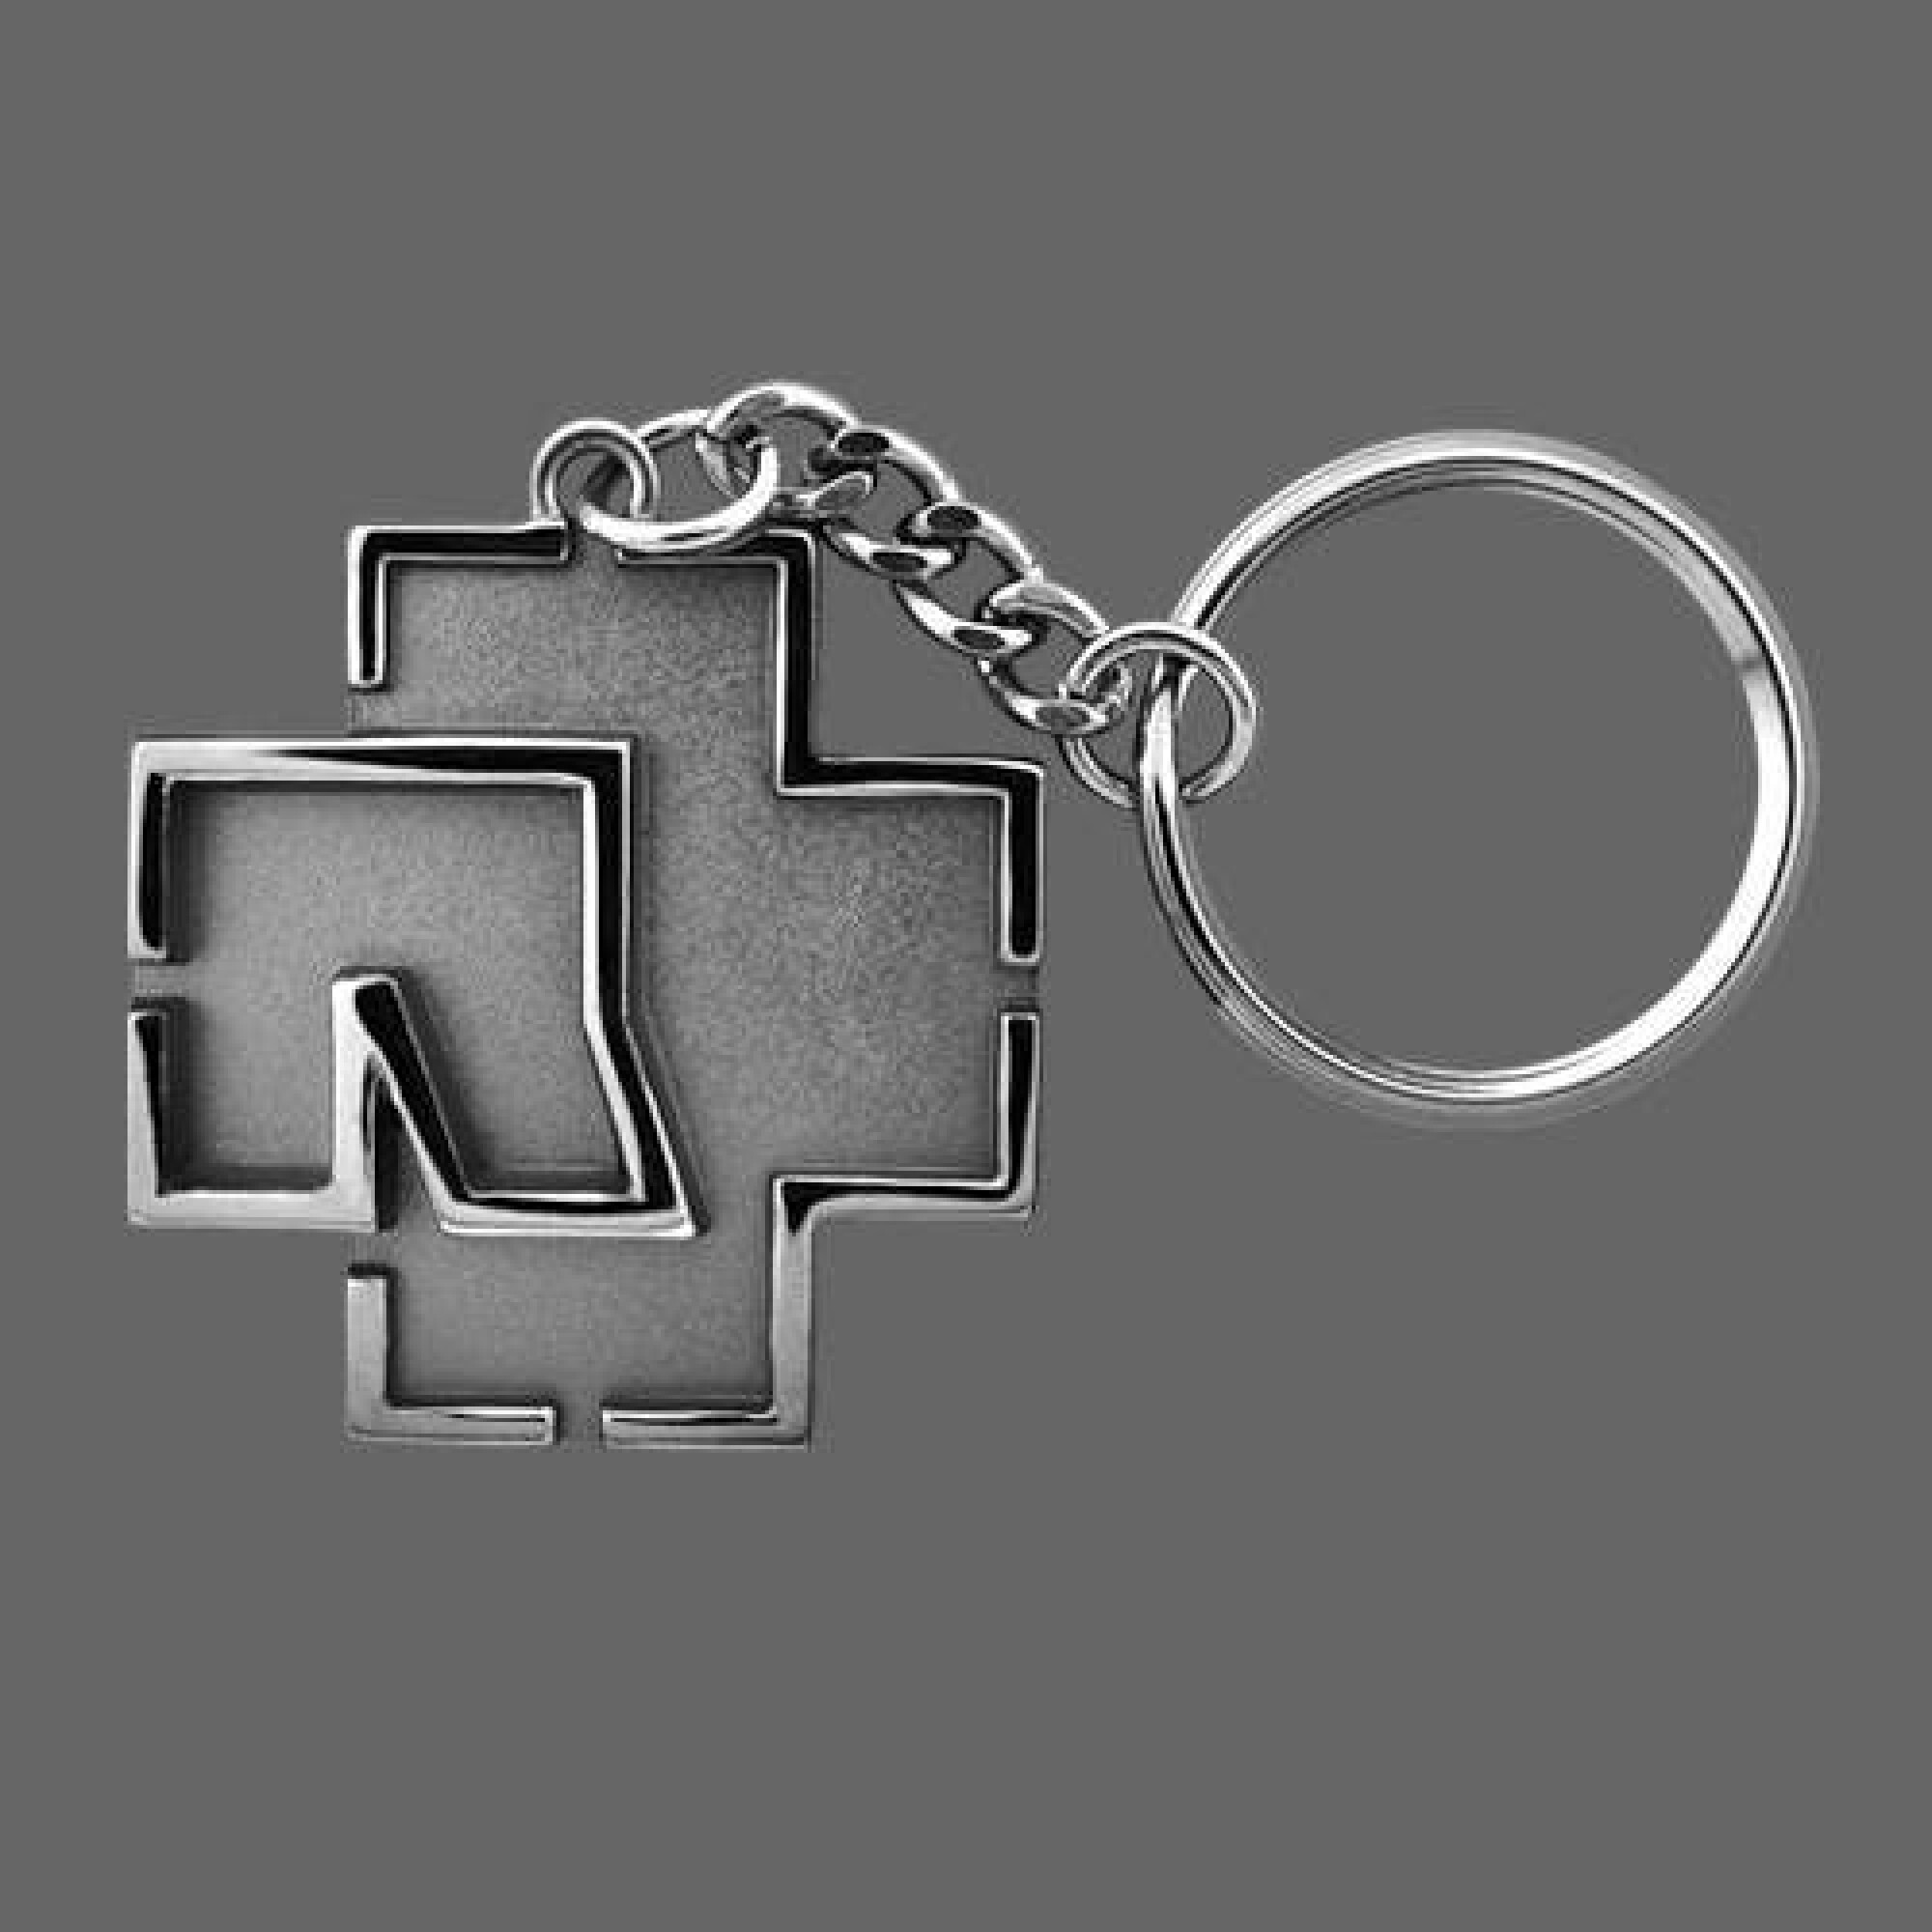 Porte-clés Rammstein Logo Schlüsselanhänger - gris - TU